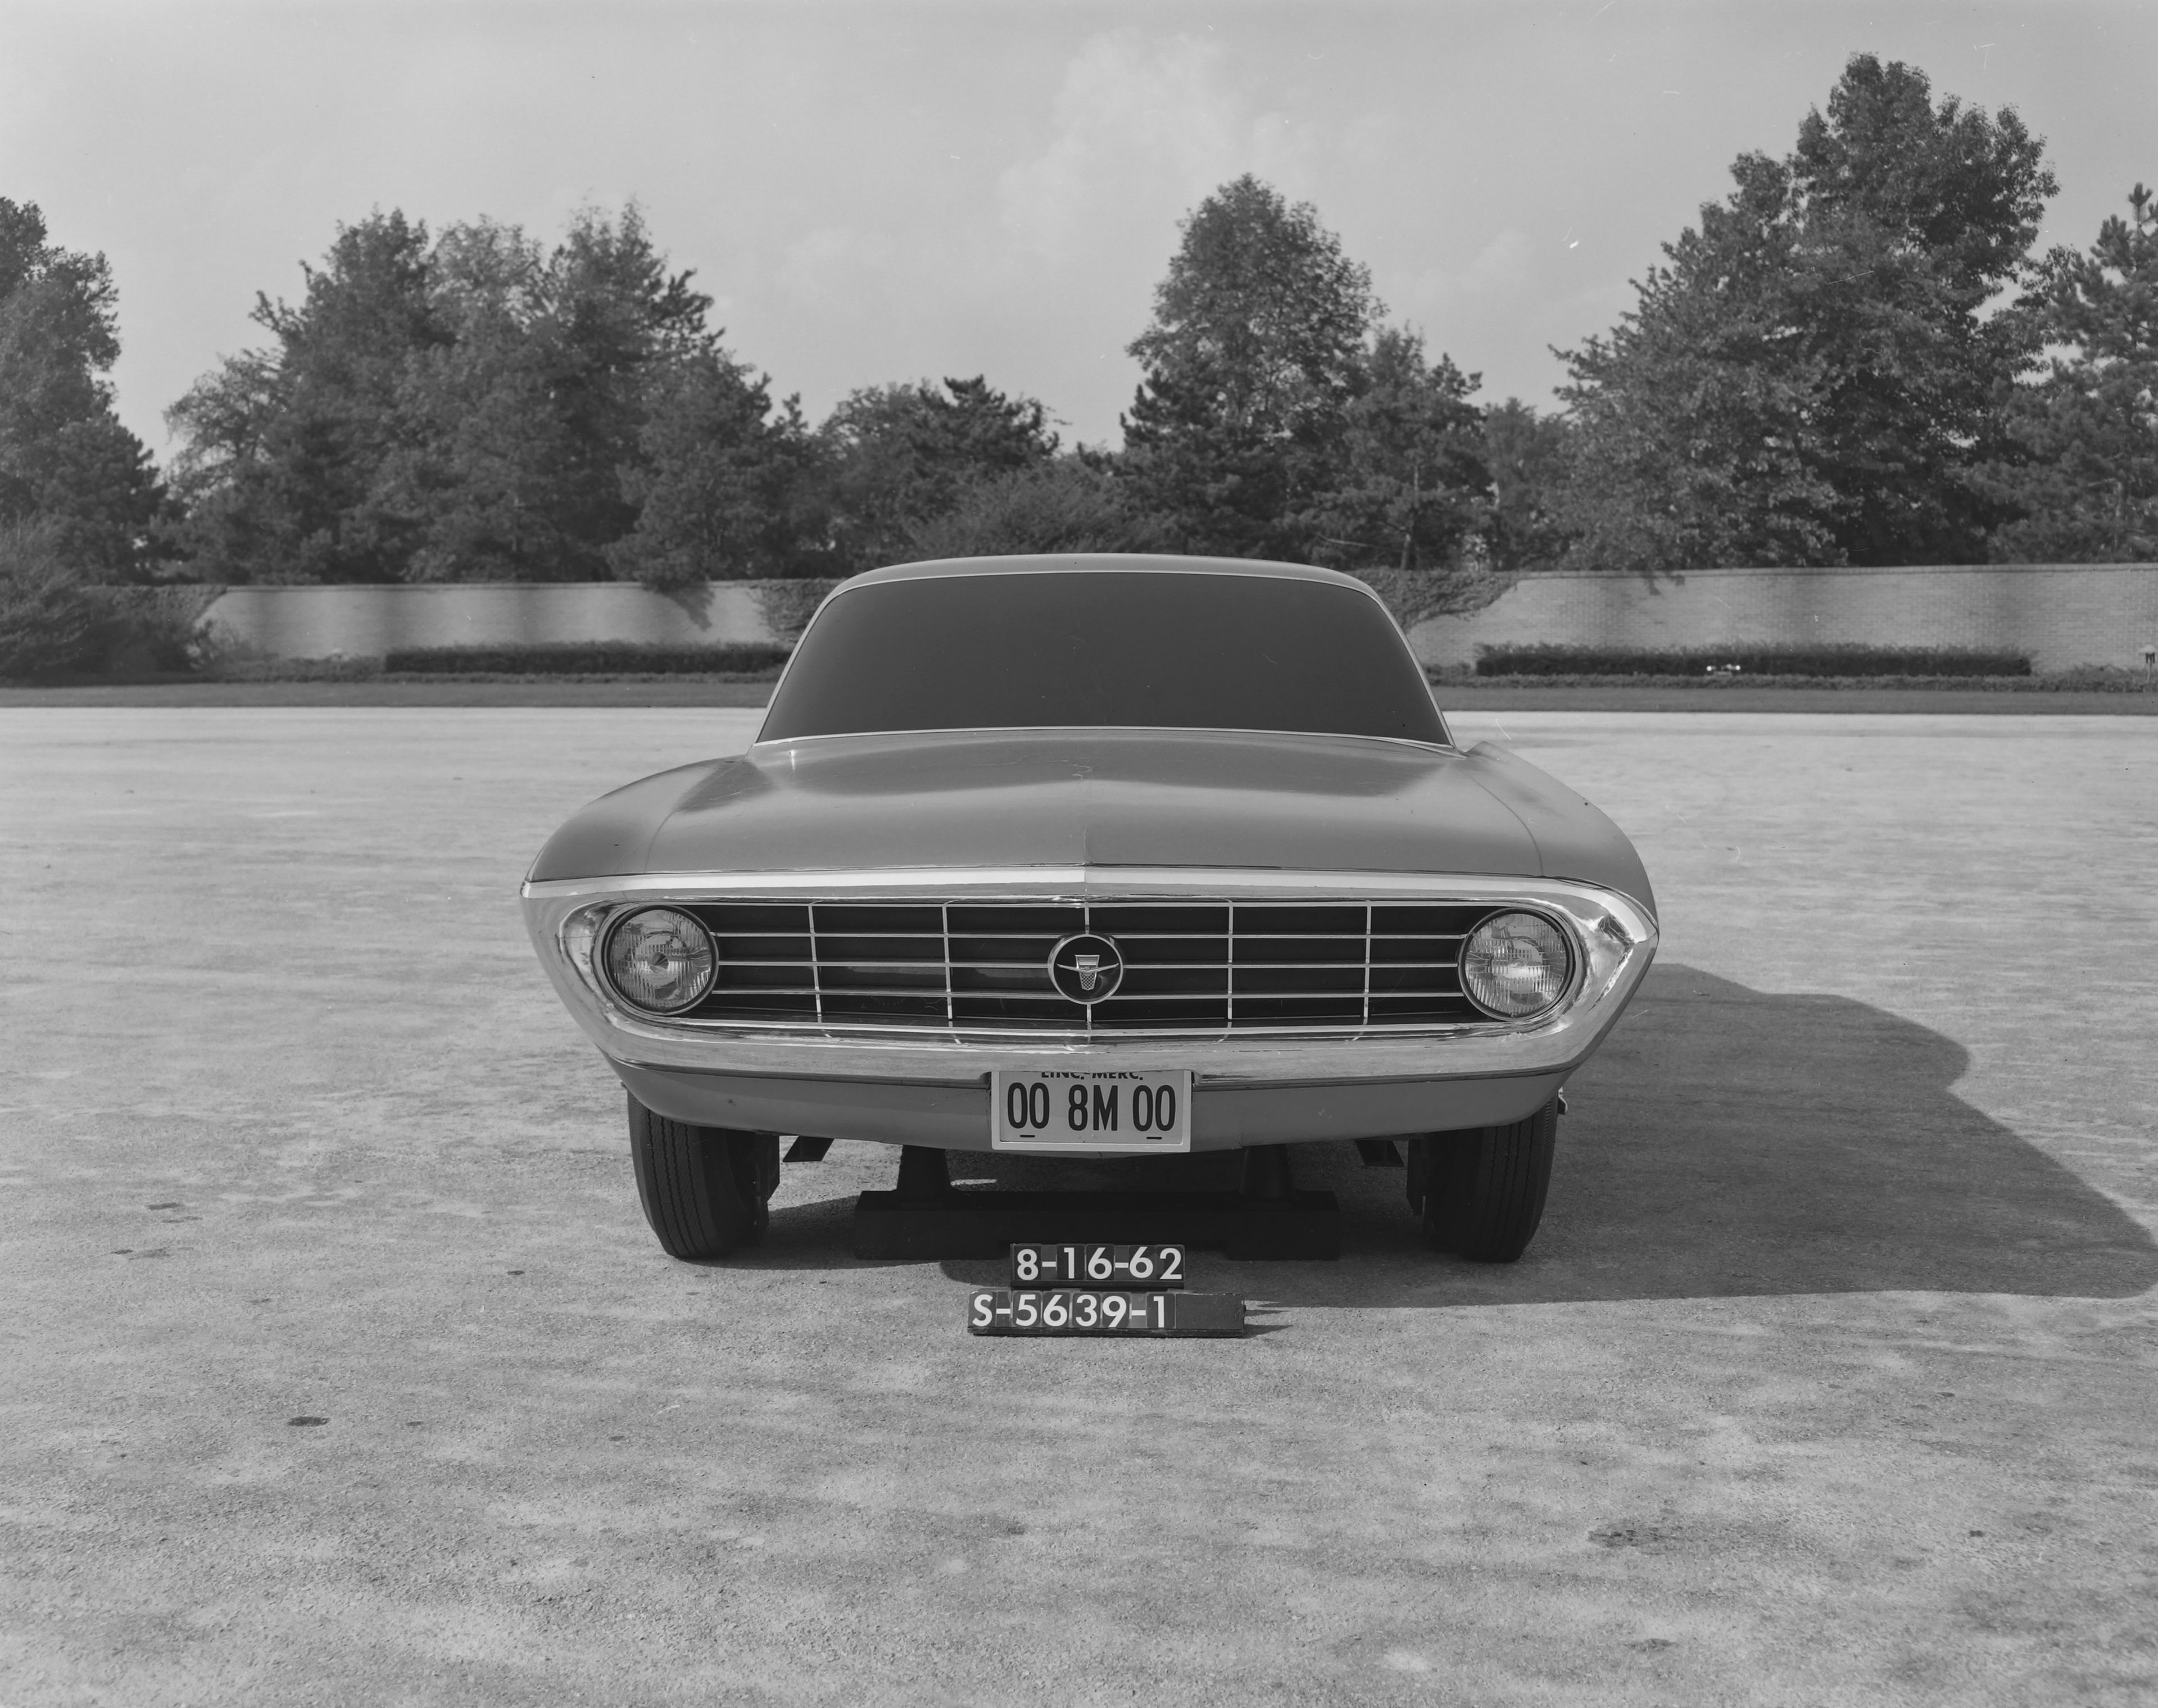 Ford Mustang (prototipos de Lincoln Mercury Studios en 1962)